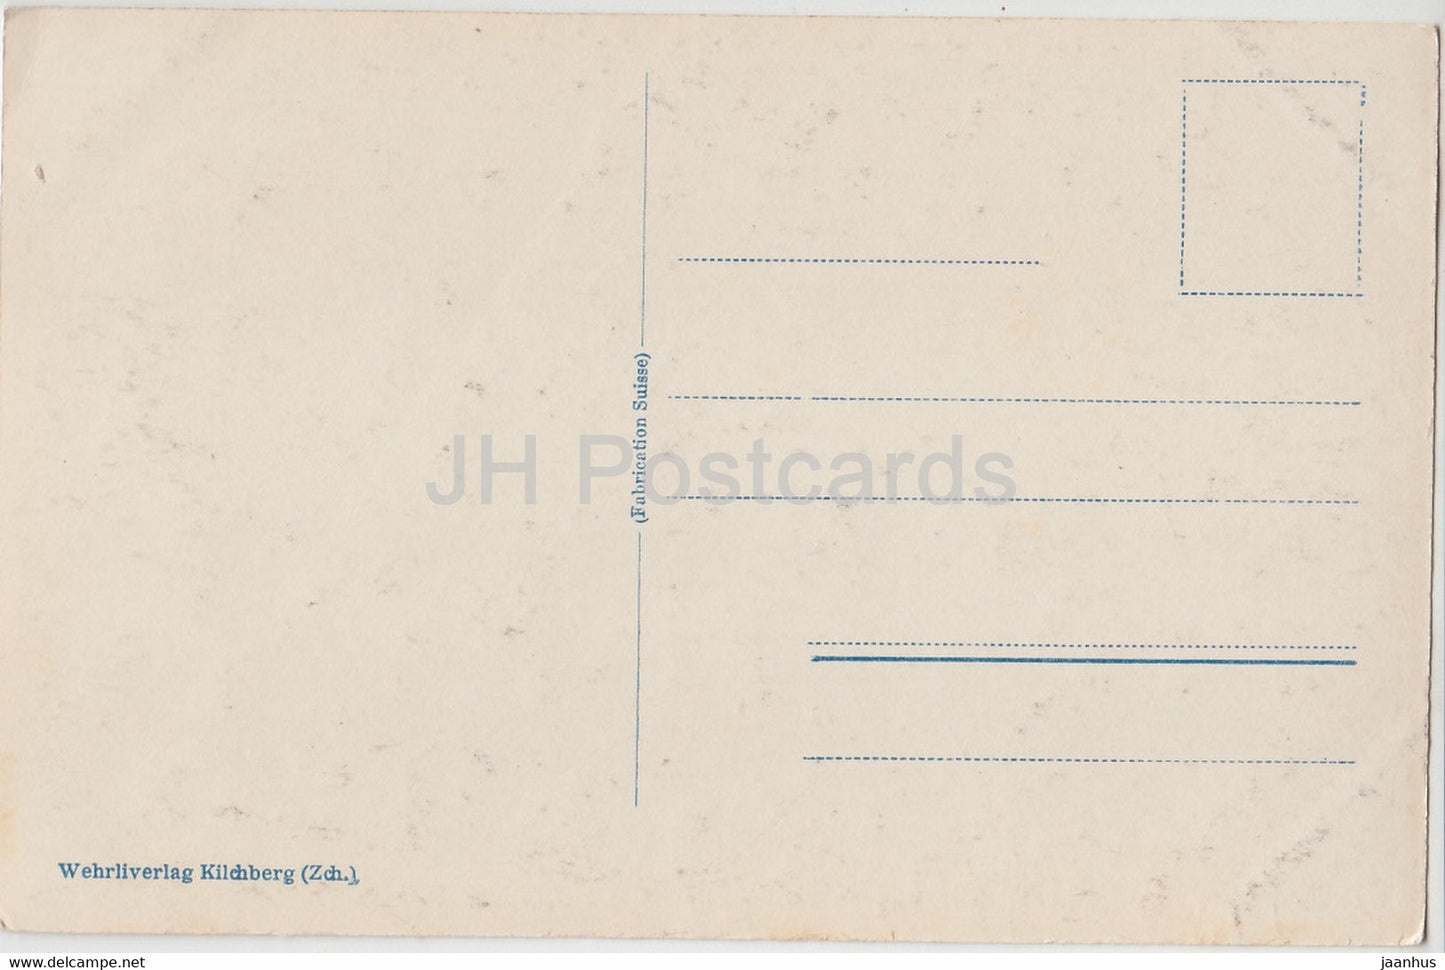 Zurich von der Weid - 2953 - carte postale ancienne - 1925 - Suisse - utilisé